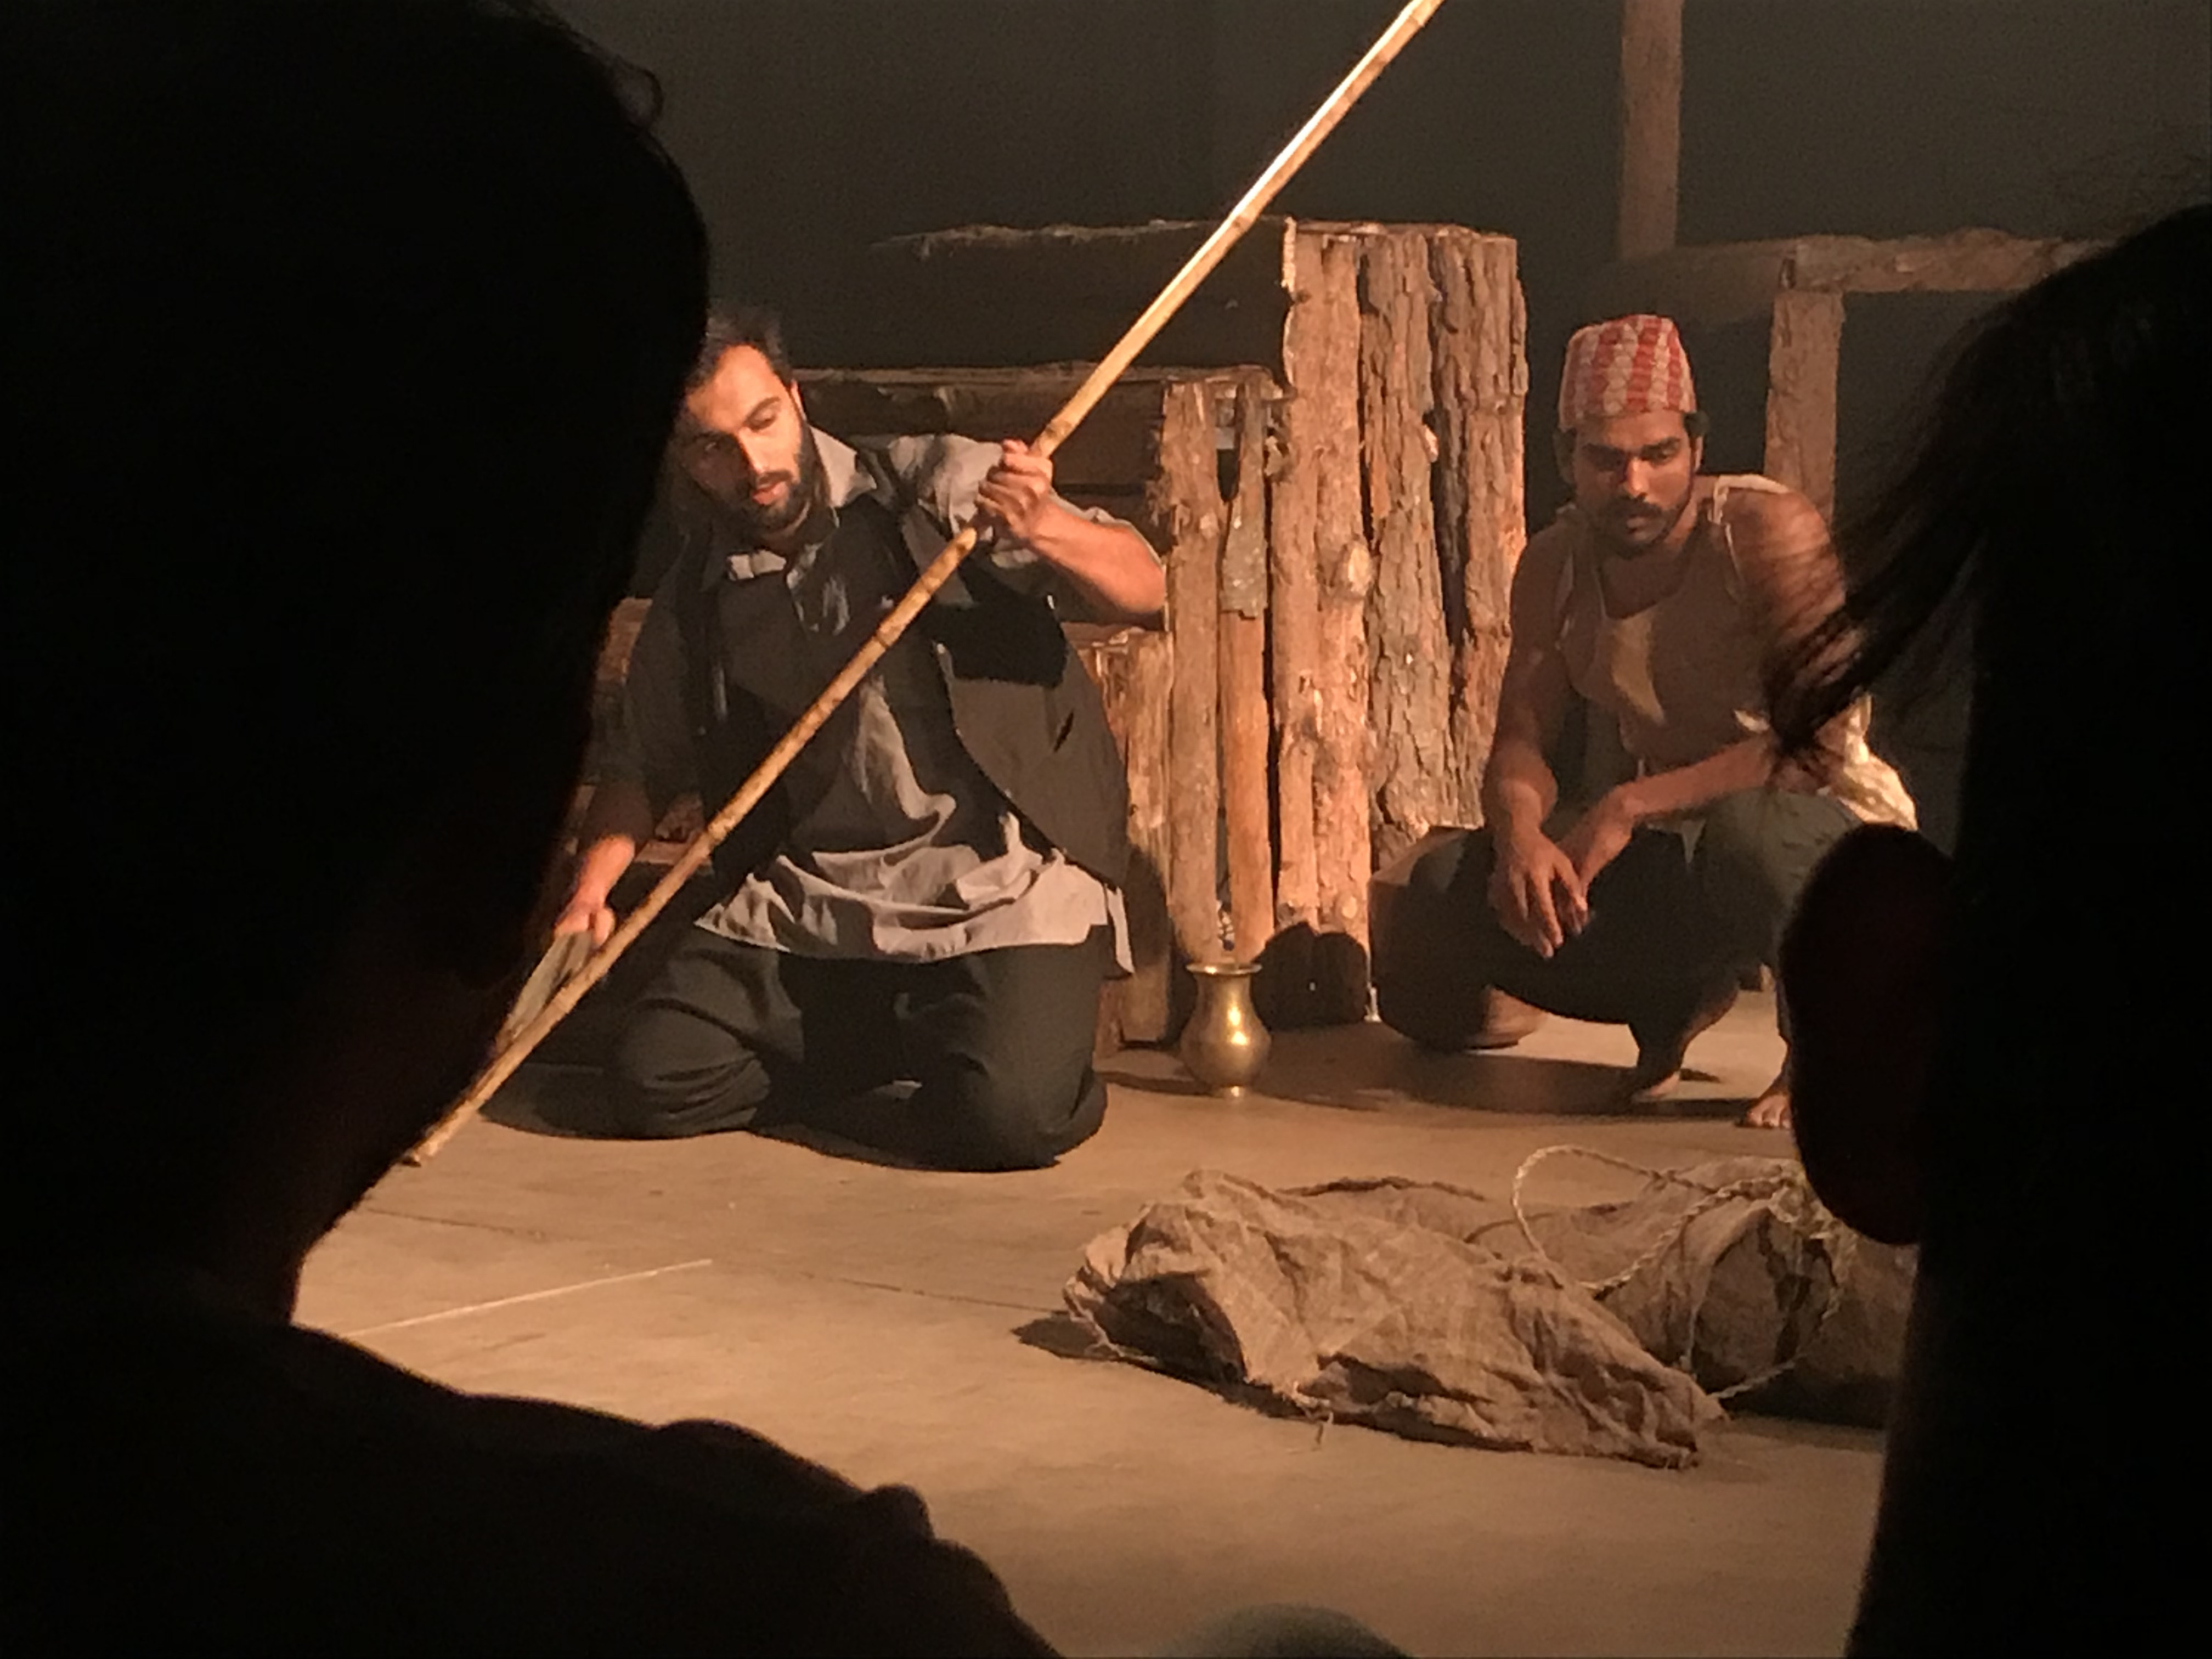 नाटक क्लेशाःको एक दृश्य। तस्बिरः अनुषा अधिकारी/सेतोपाटी